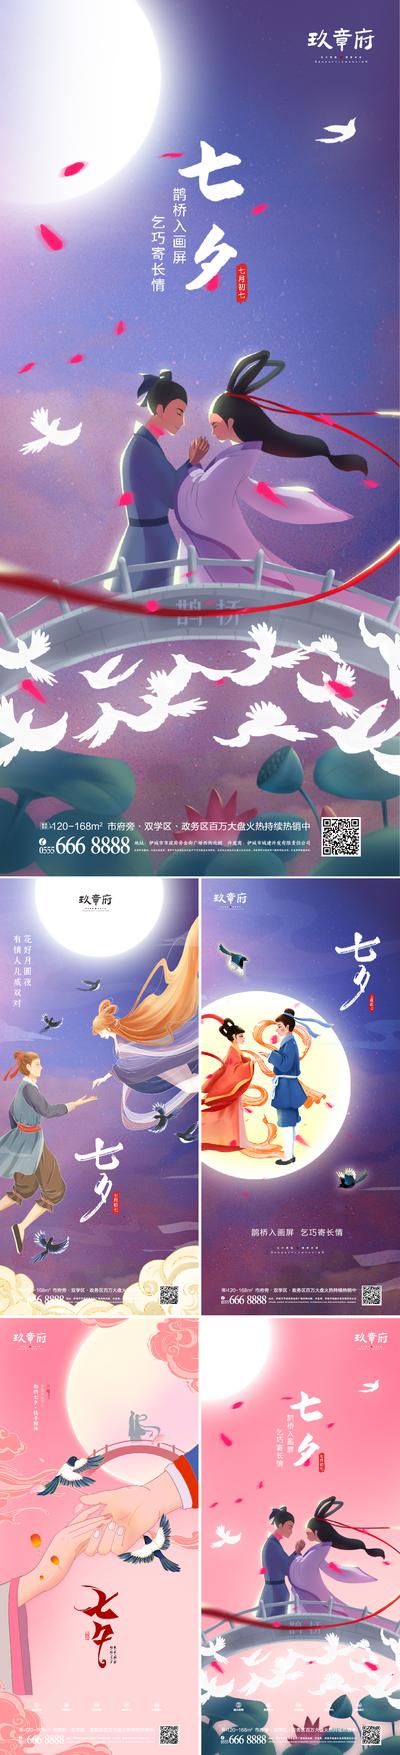 【南门网】海报 中国传统节日 房地产 七夕节 情人节 鹊桥 牛郎织女 系列